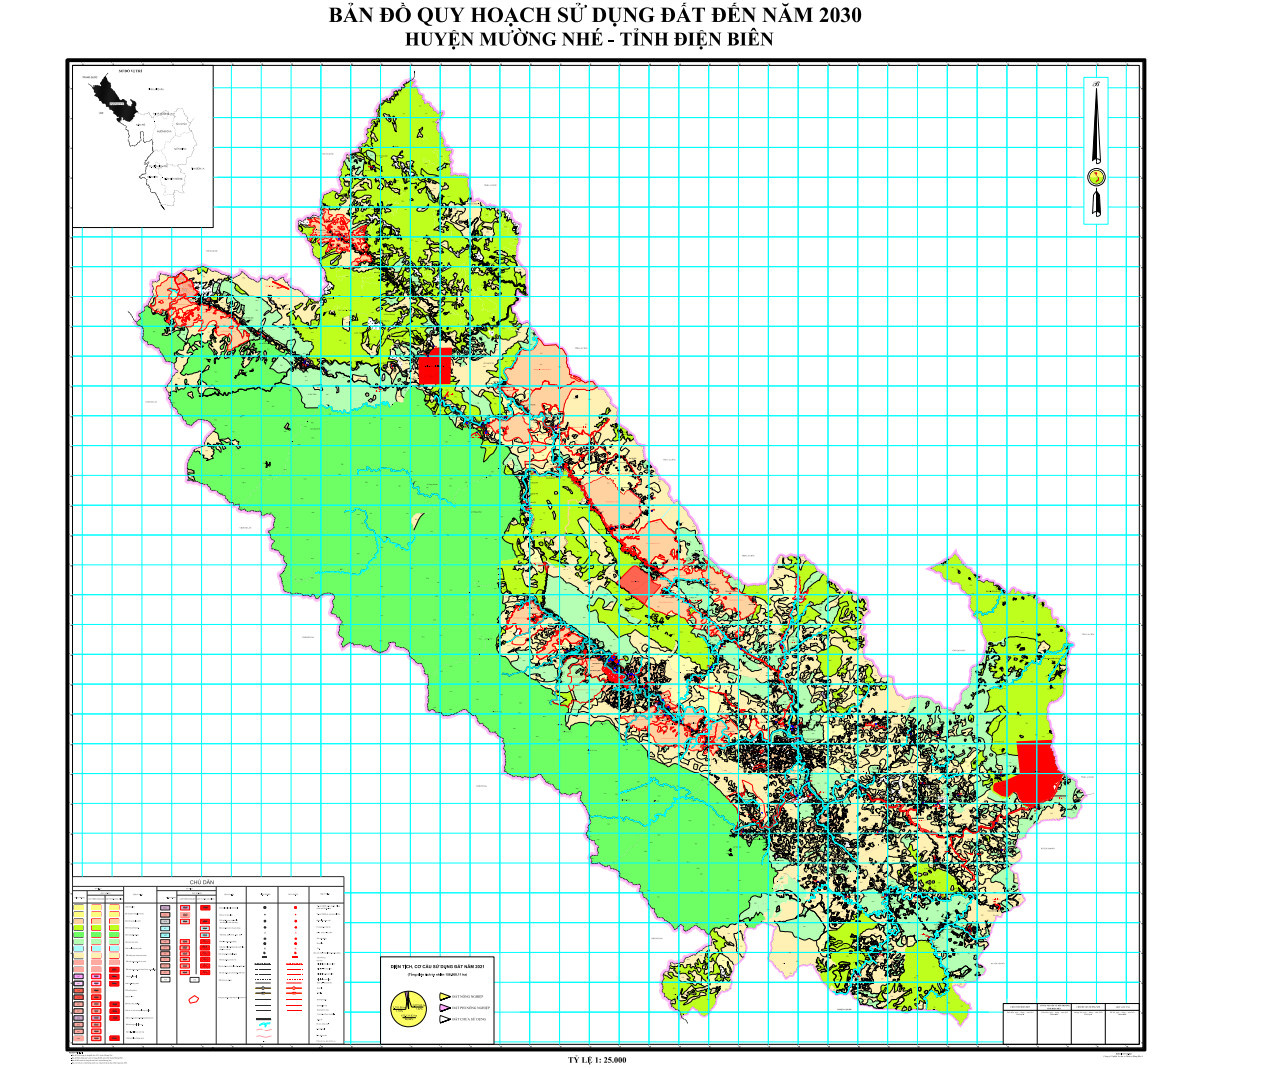 Bản đồ quy hoạch huyện Mường Nhé